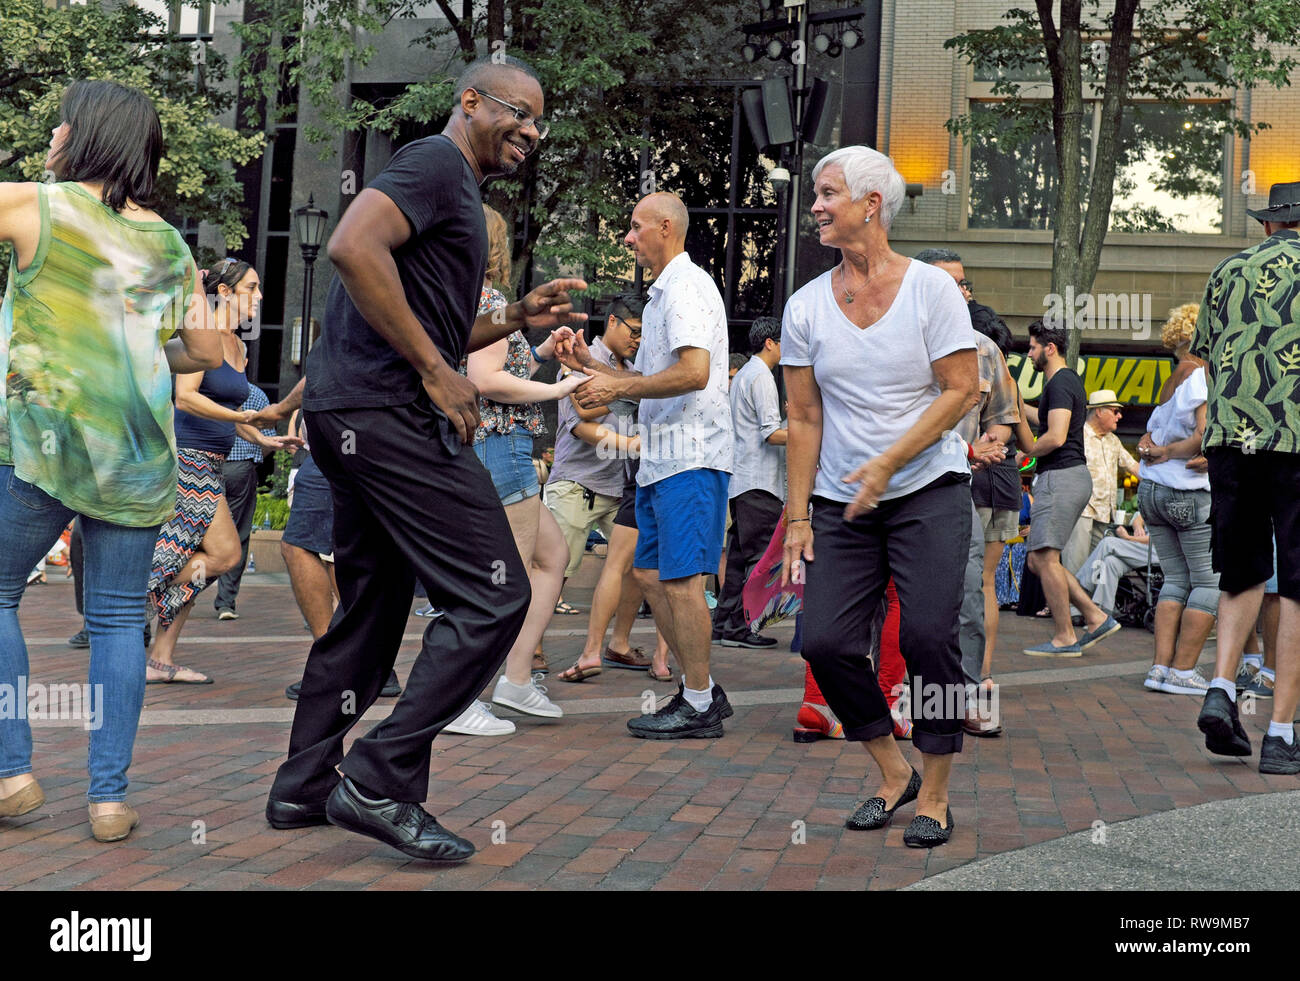 La danse de la US Bank Plaza dans le centre-ville de Cleveland, Ohio, USA est un événement estival hebdomadaire attirer un éventail de Clevelanders et visiteurs. Banque D'Images